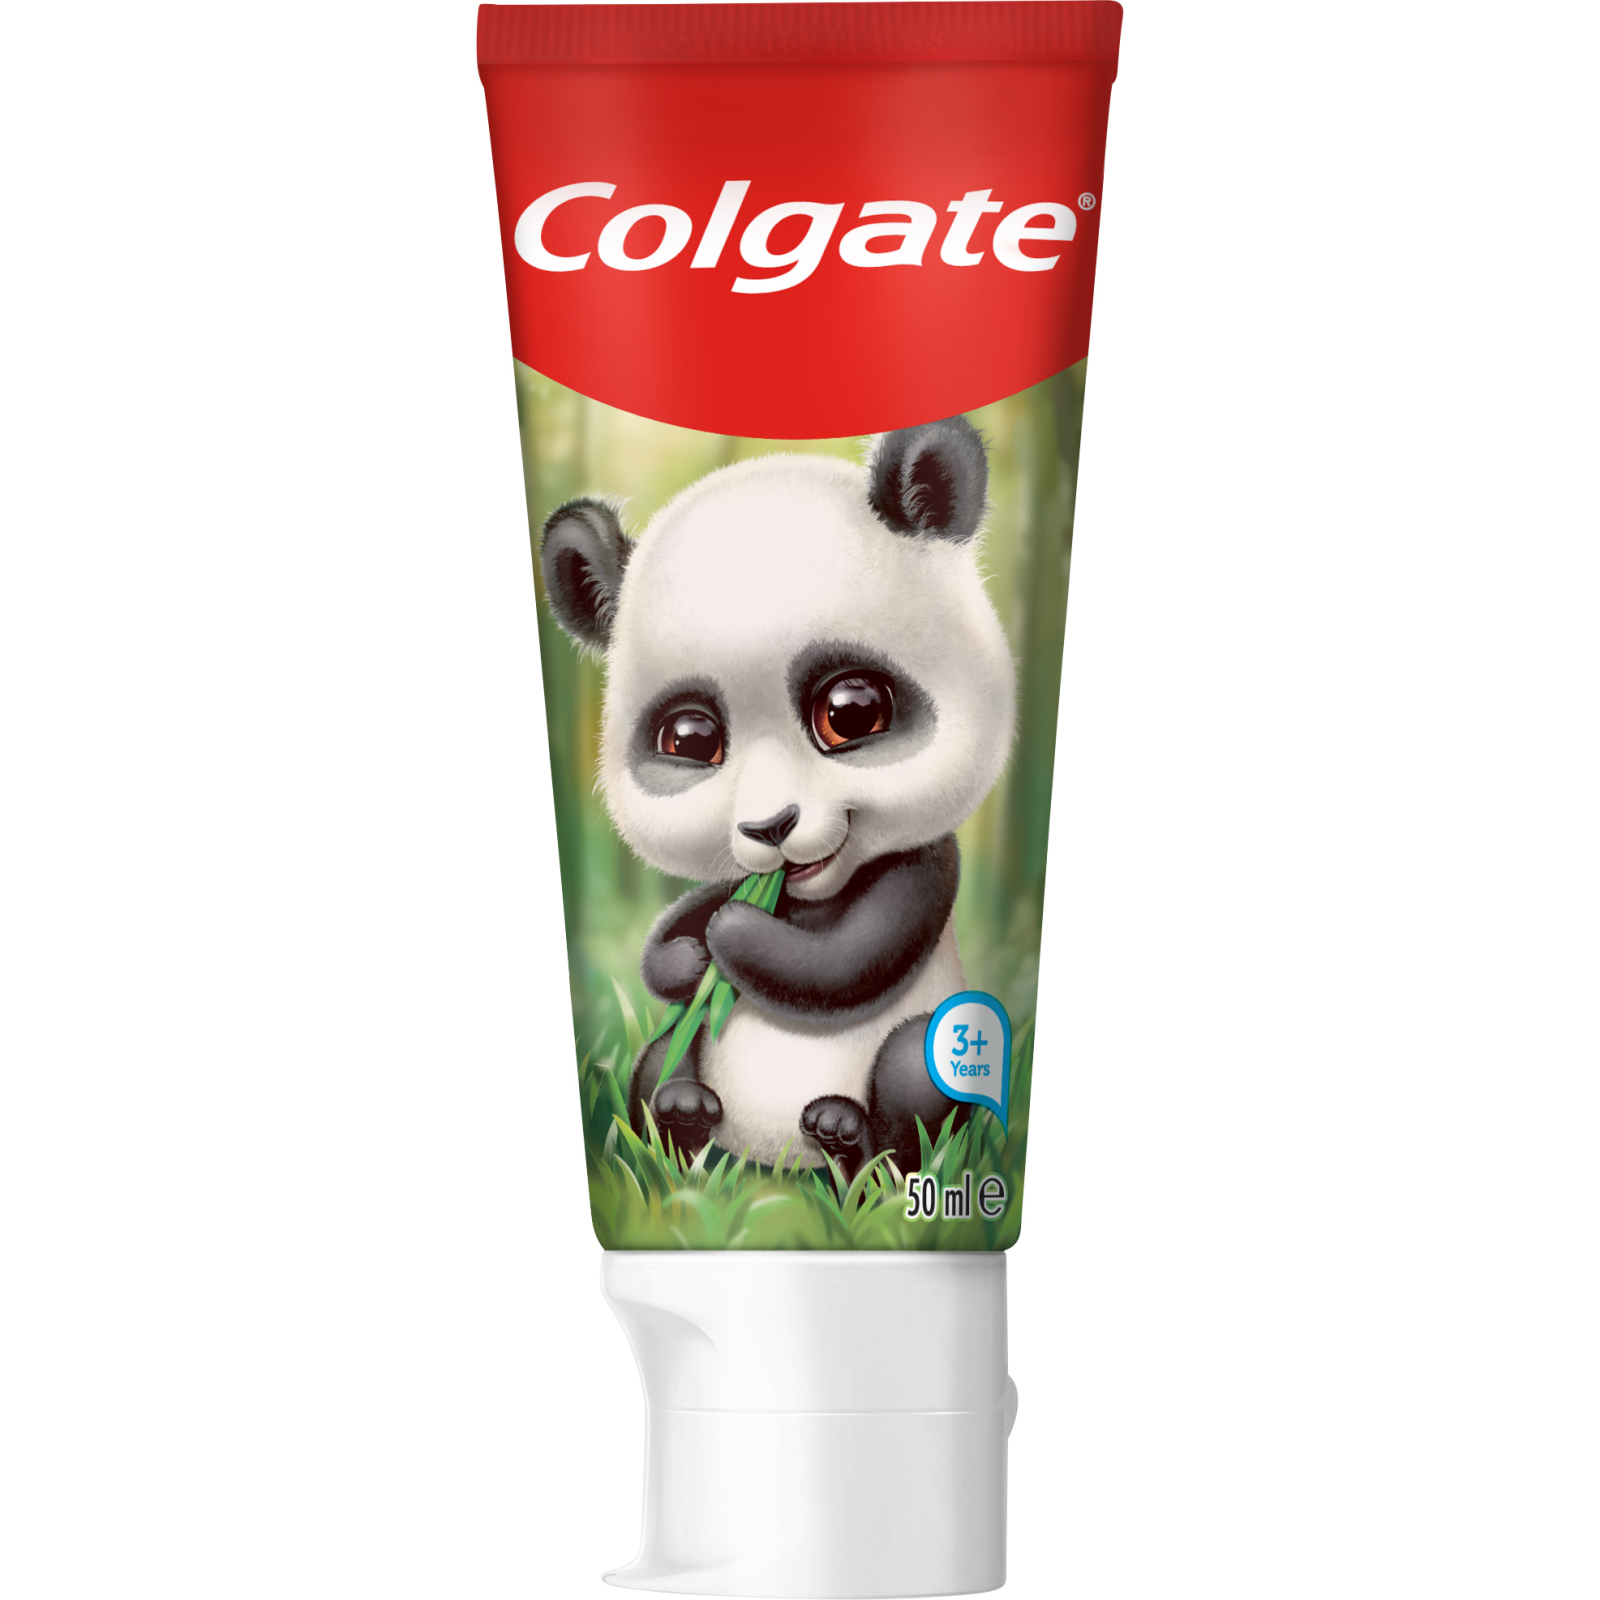 Детская зубная паста Colgate от 3-х лет Панда 50 мл (2142000000005)